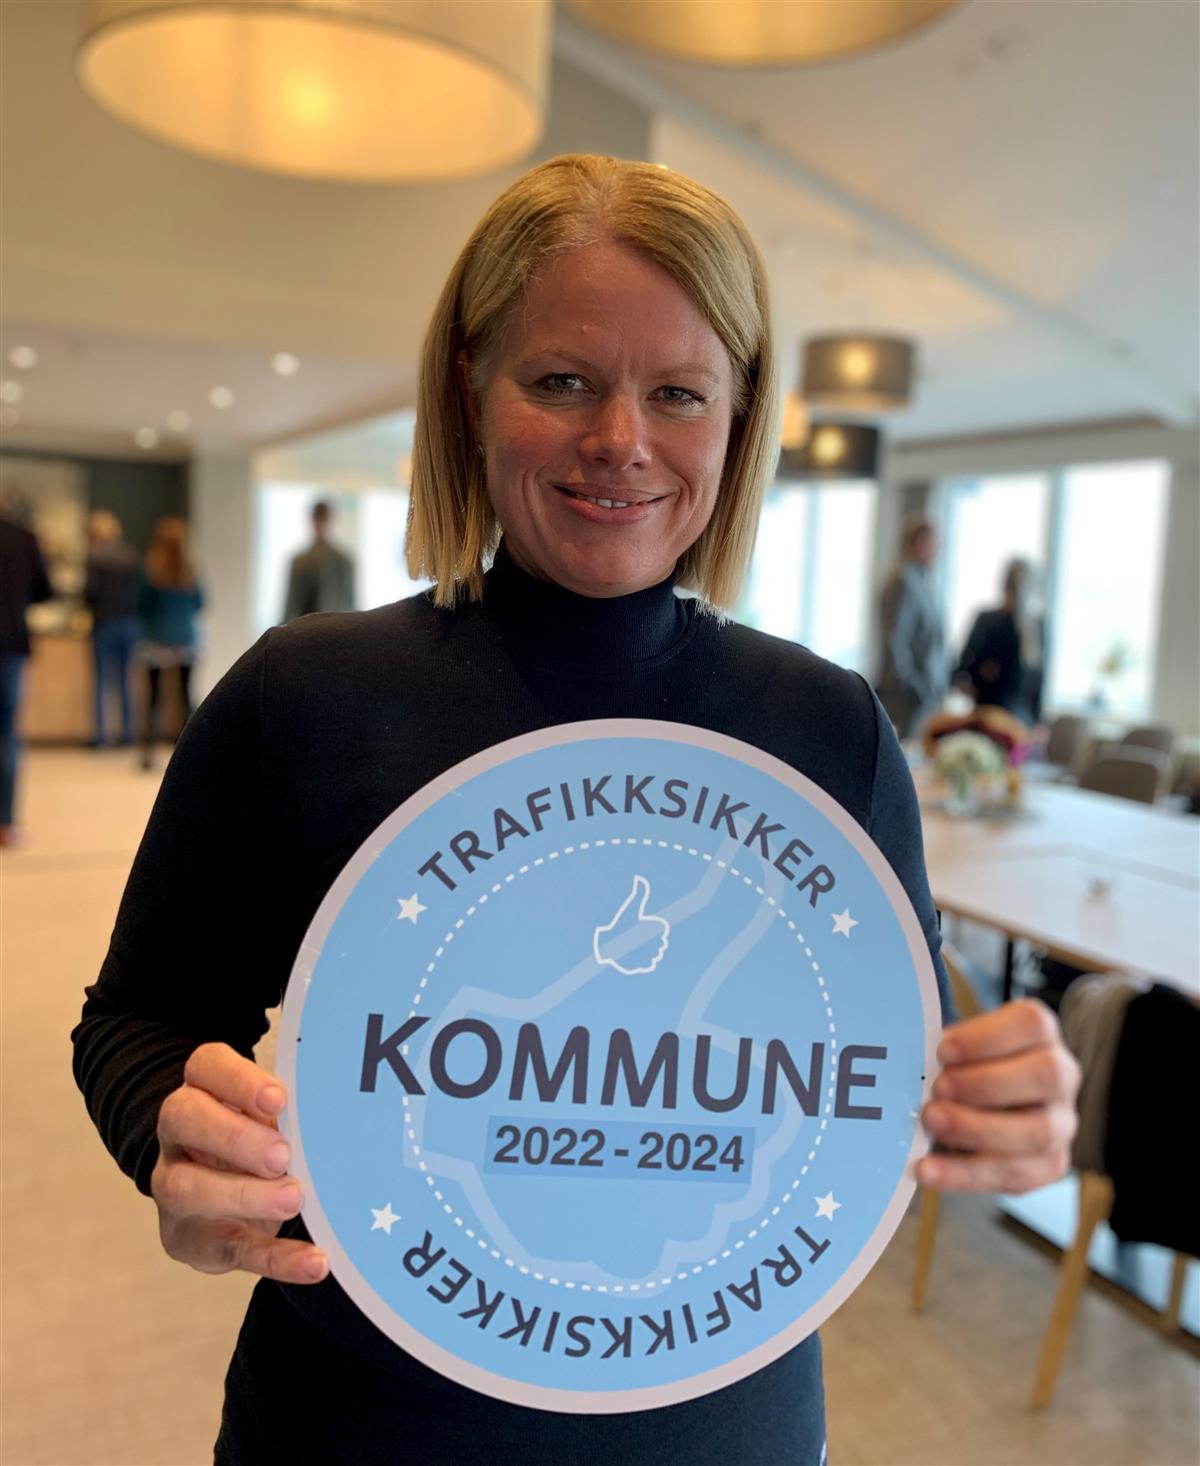 Britt Svendsen med skilt "Trafikksikker kommune" - Klikk for stort bilde